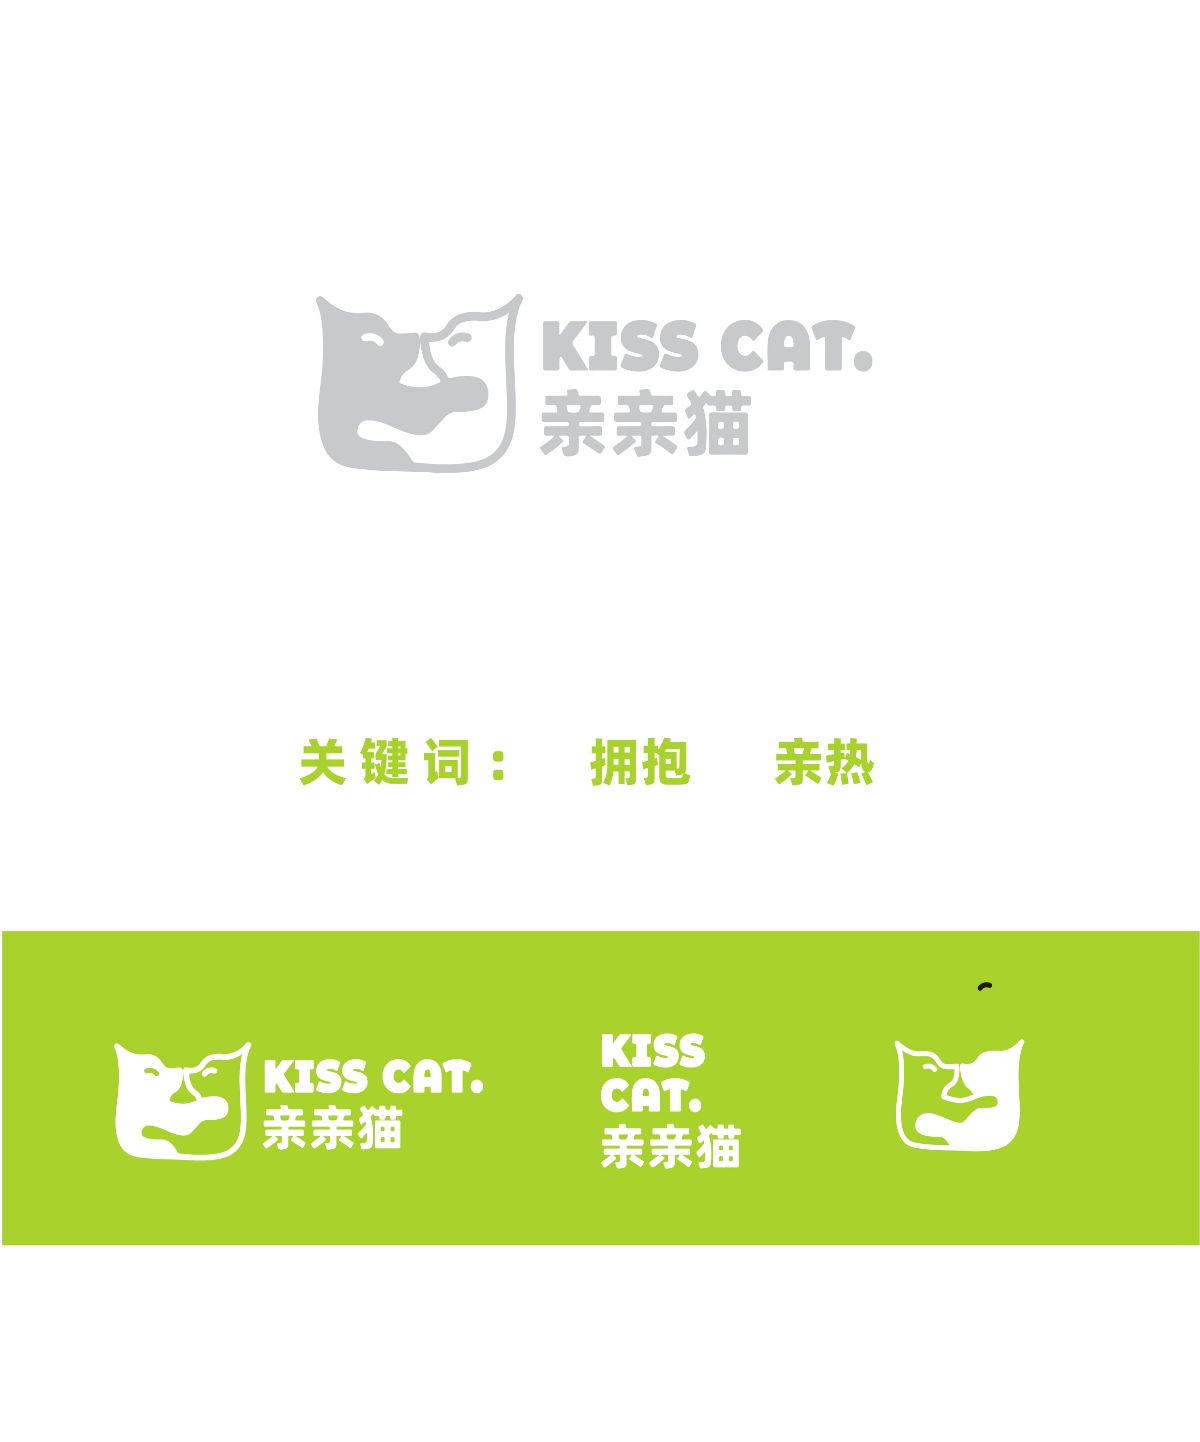 亲亲猫 猫砂logo设计包装设计